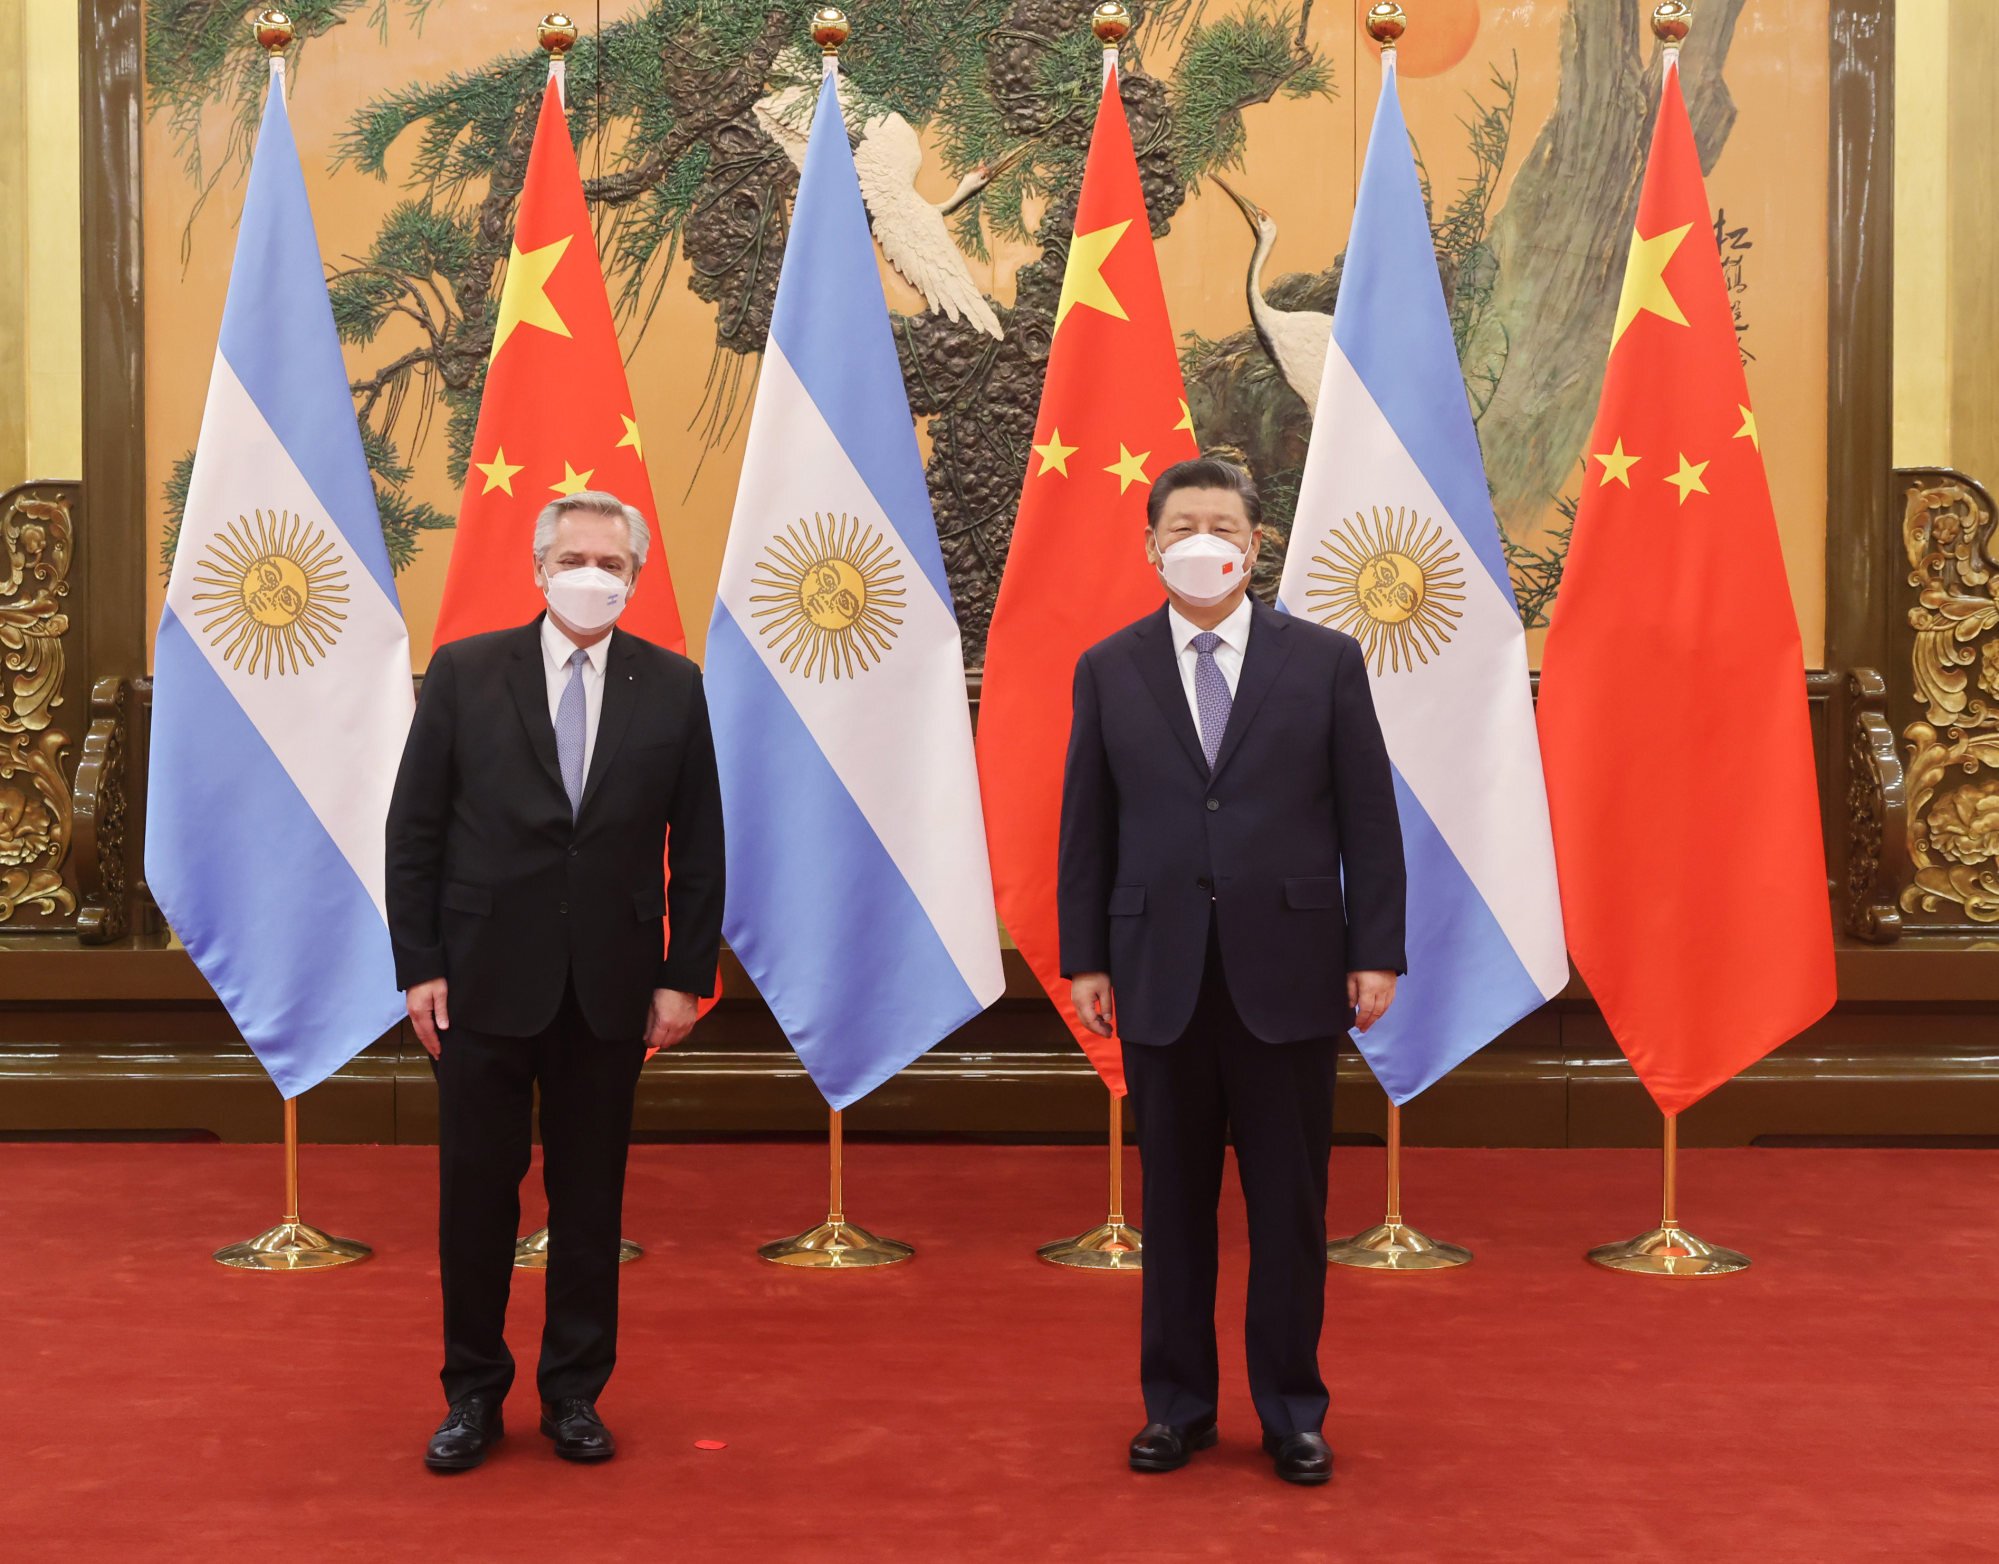 Trung Quốc: Trung Quốc là một trong những đối tác kinh tế quan trọng của Argentina, đặc biệt là trong lĩnh vực nông nghiệp và thực phẩm. Hiện nay, Trung Quốc đang mở rộng sự hiện diện của mình tại khu vực Latin America và Argentina đã mở đường cho Trung Quốc đẩy mạnh hợp tác và đầu tư. Hãy xem hình ảnh liên quan đến sự gia tăng quan hệ kinh tế giữa Argentina và Trung Quốc.